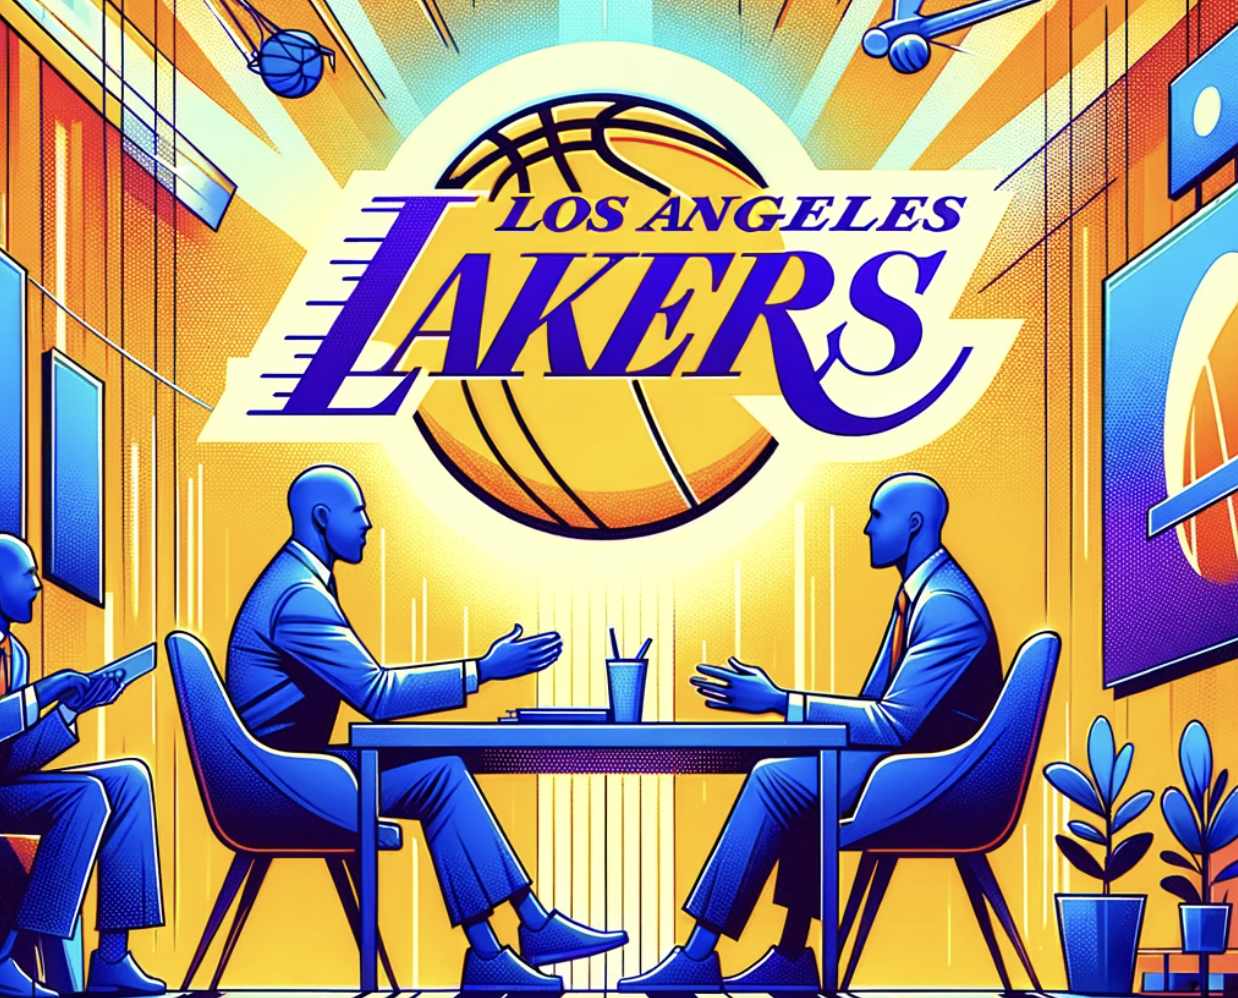 Lakers Trade Rumors